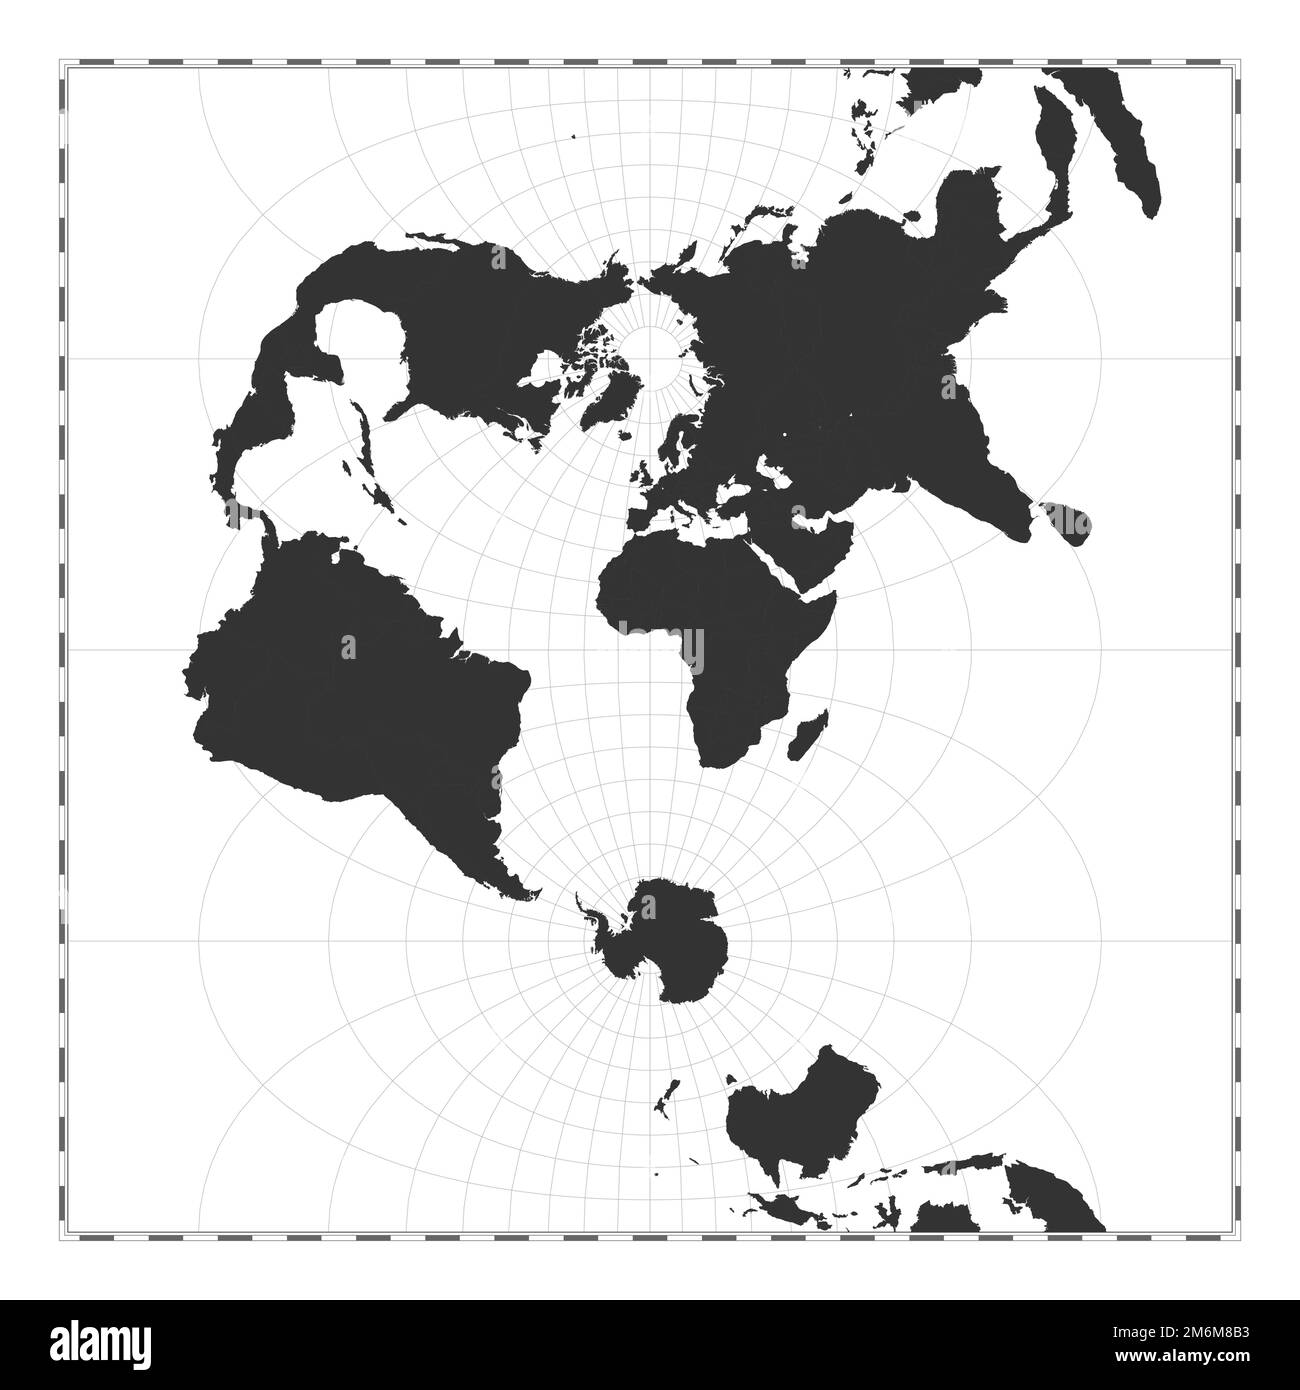 Vector-Weltkarte. Transversale sphärische Mercatorprojektion. Geografische Karte mit Breiten- und Längengraden. Zentriert auf 0deg Längengrad Stock Vektor